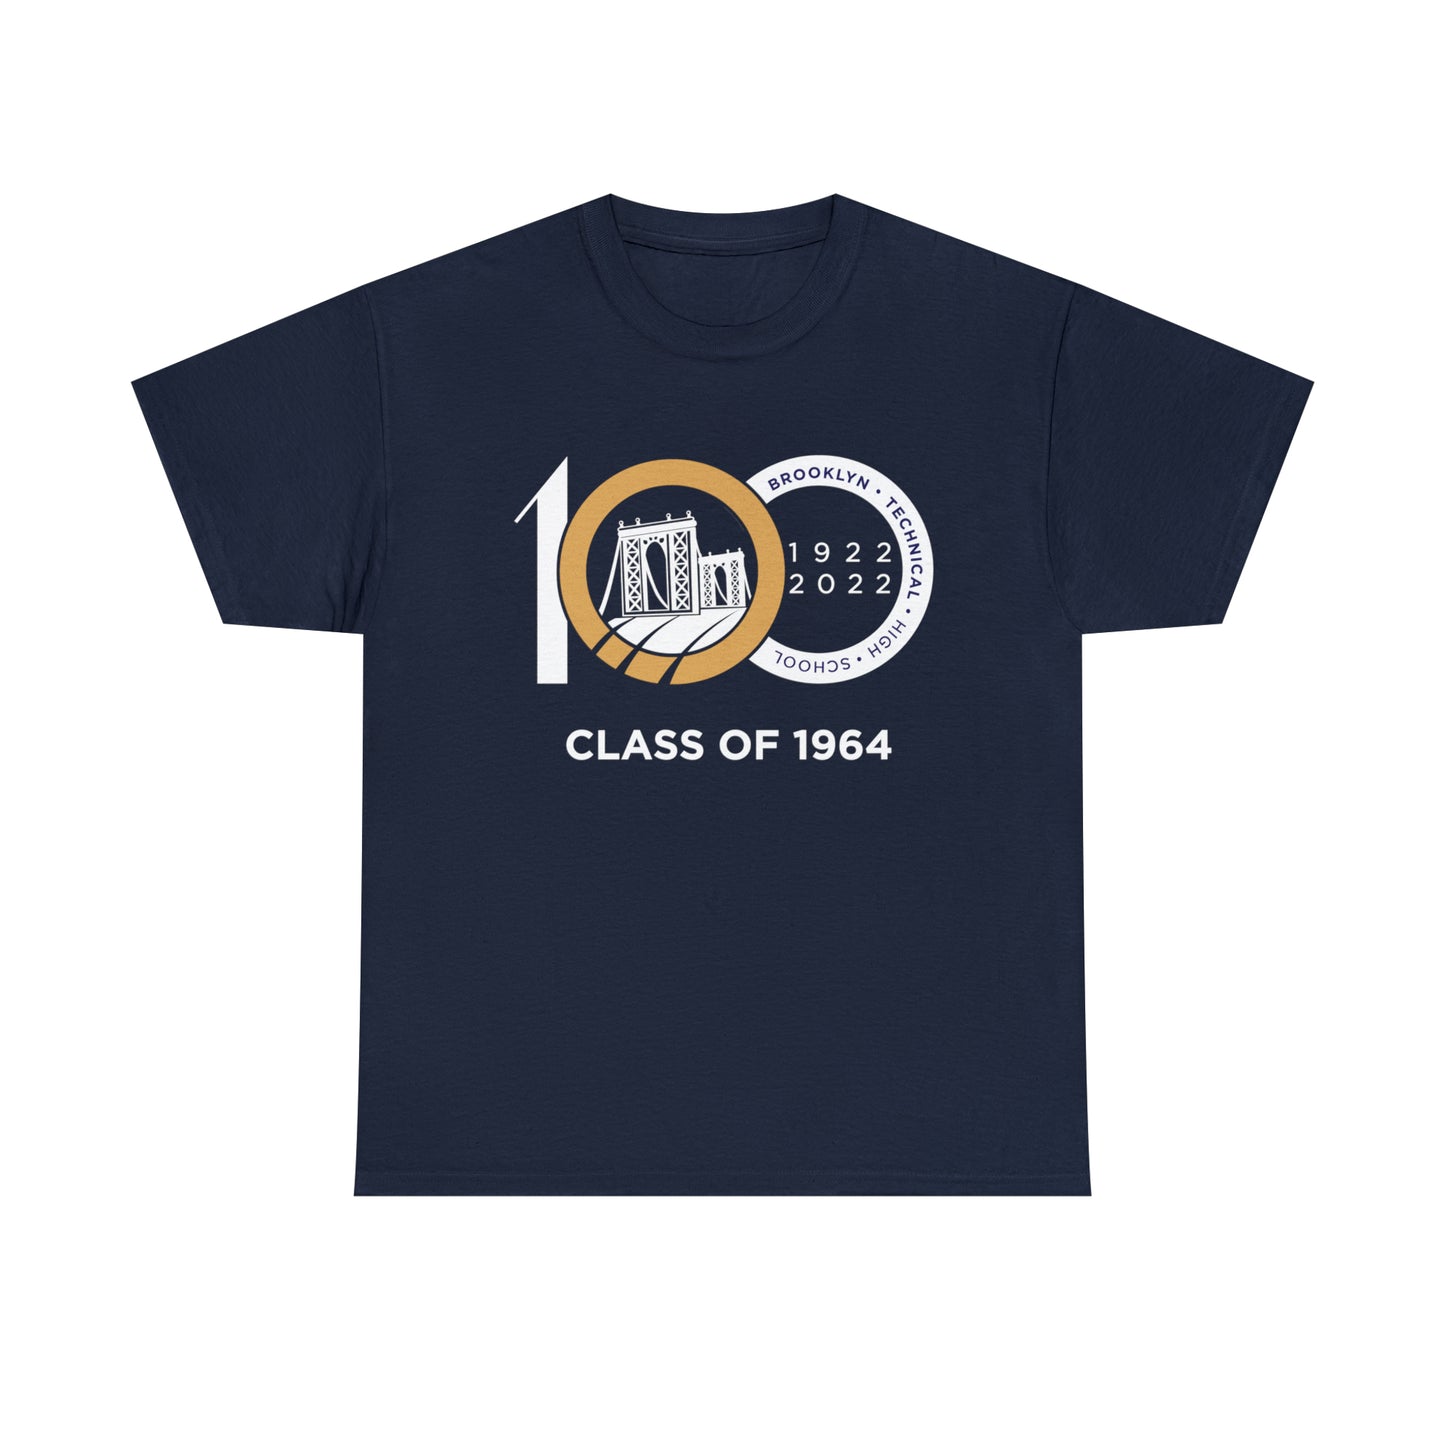 Centennial - Men's Heavy Cotton T-Shirt - Class Of 1964